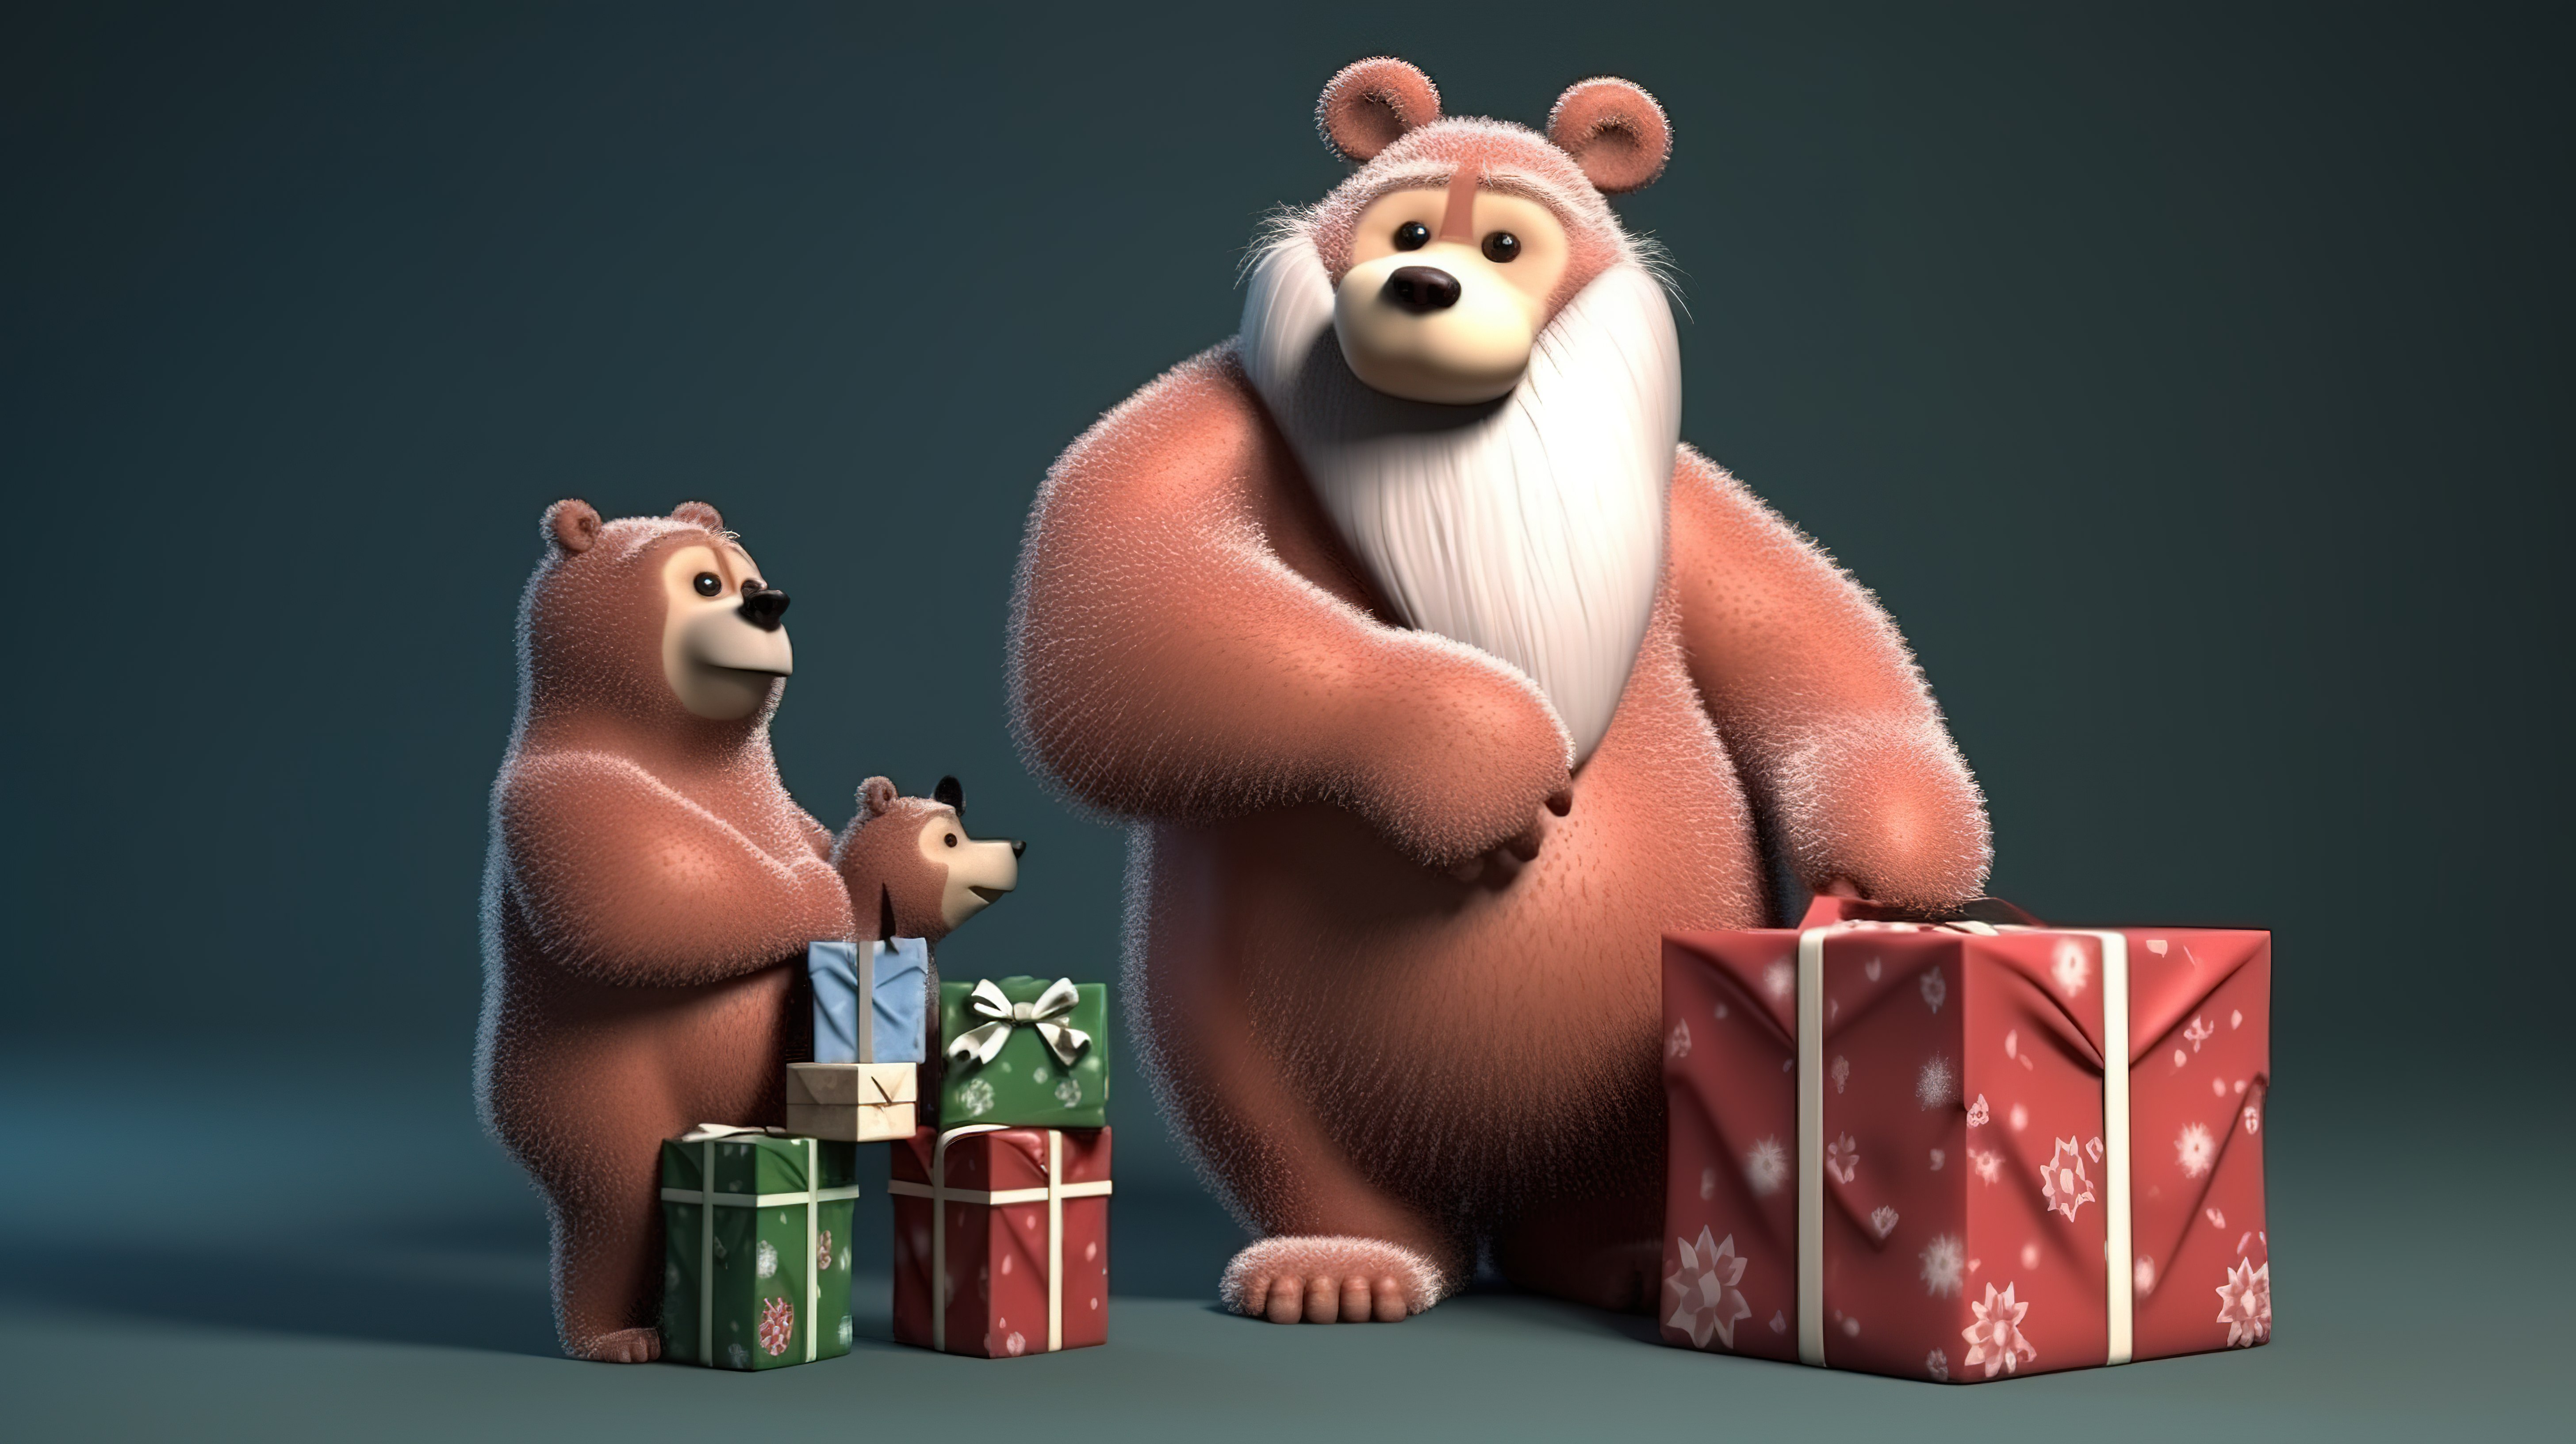 令人惊叹的熊爷爷用 3D 艺术作品为孩子和成人带来礼物图片